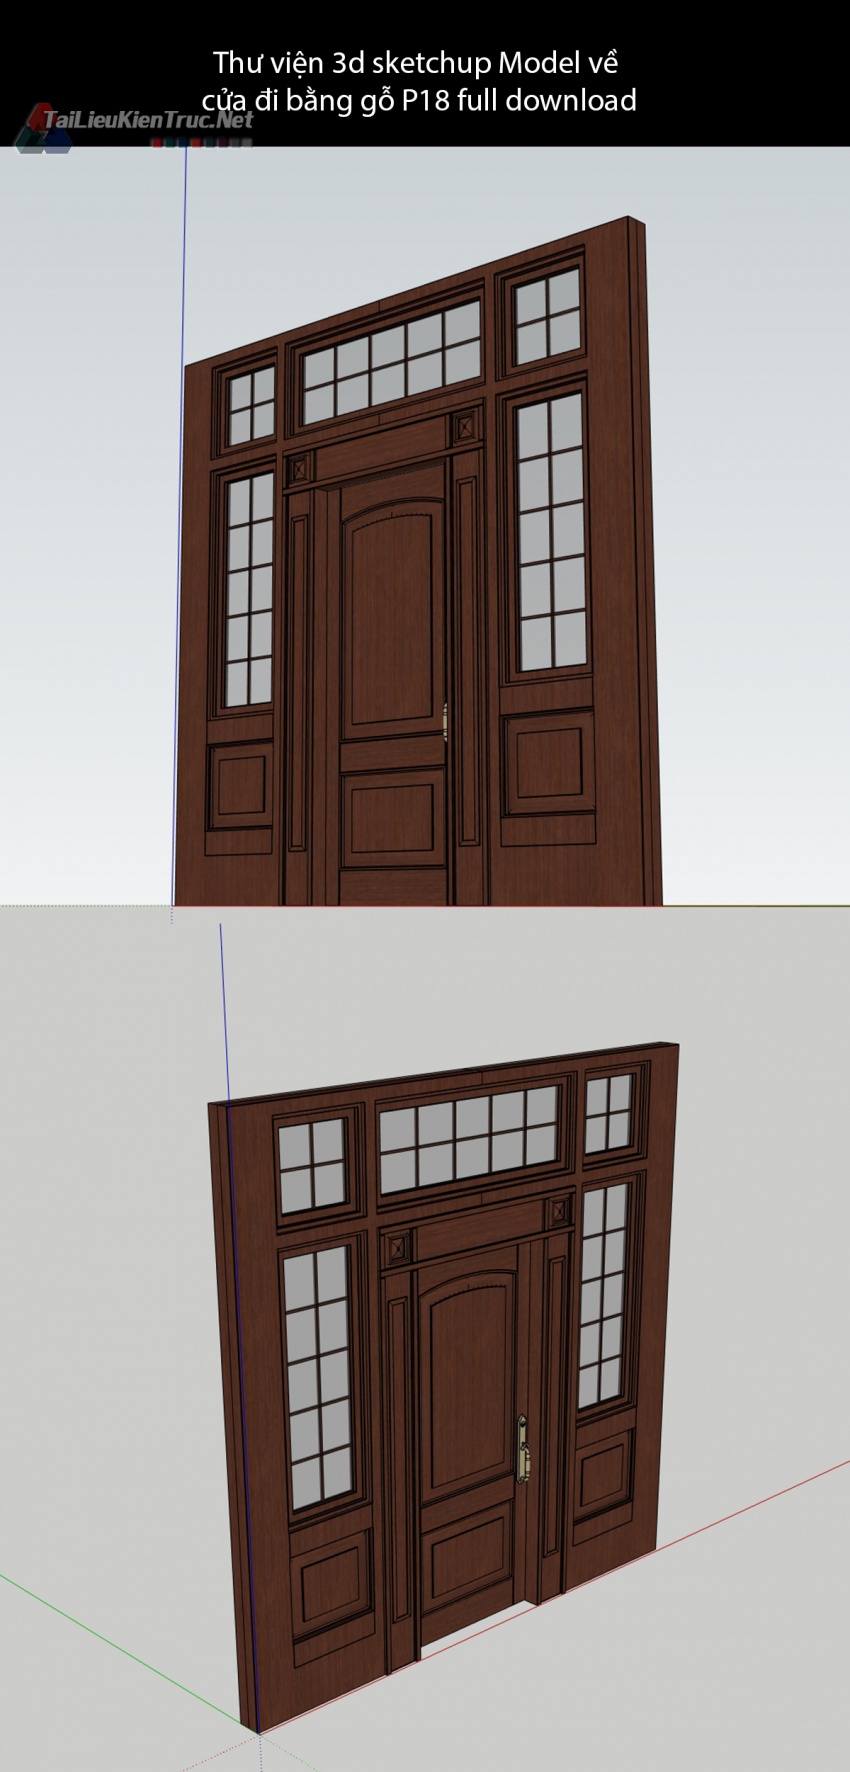 Thư viện 3d sketchup Model về cửa đi bằng gỗ P18 full download